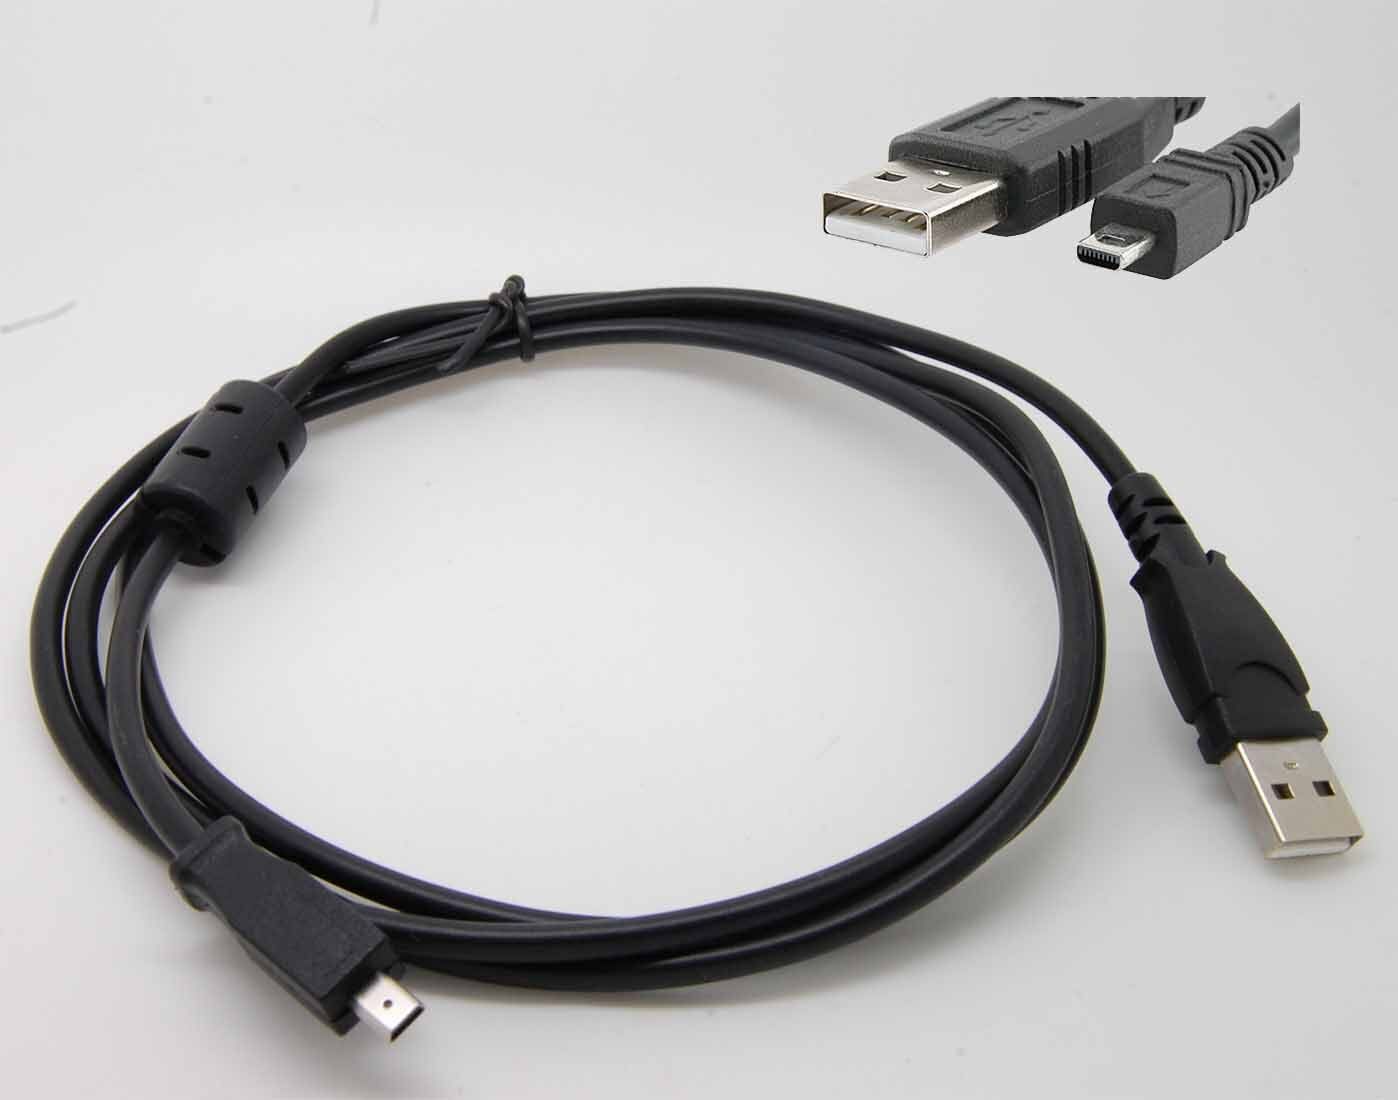 USB CABLE FOR KODAK ZD710 P880 C530 C330 C310 V530 C360 Z760 Z730 Z740 C340 Z700